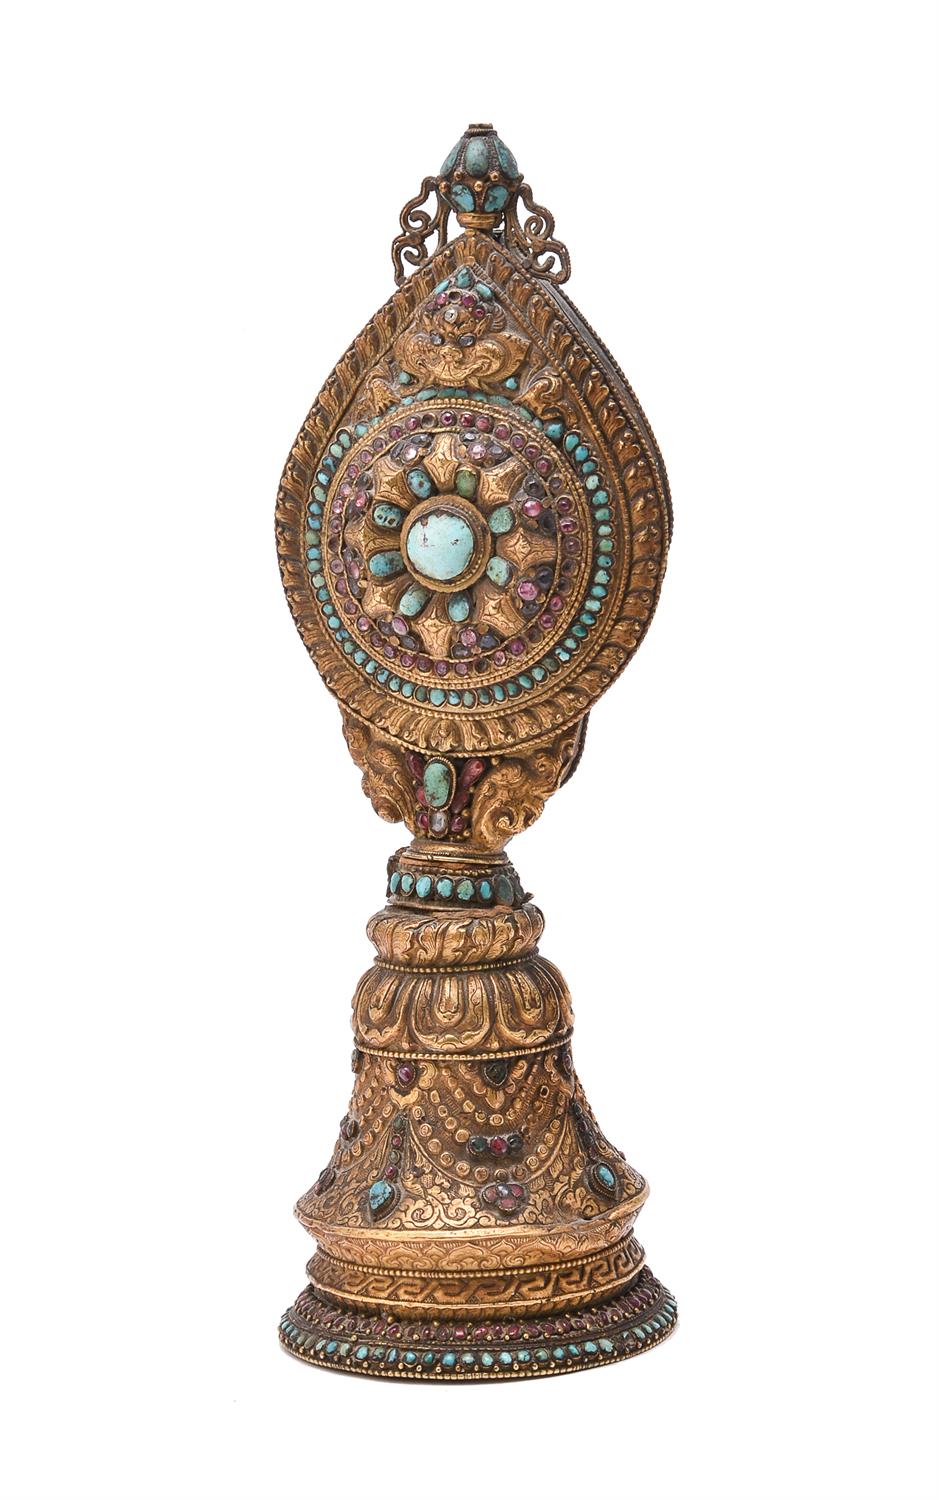 A copper gilt repoussé Buddhist altar ornament